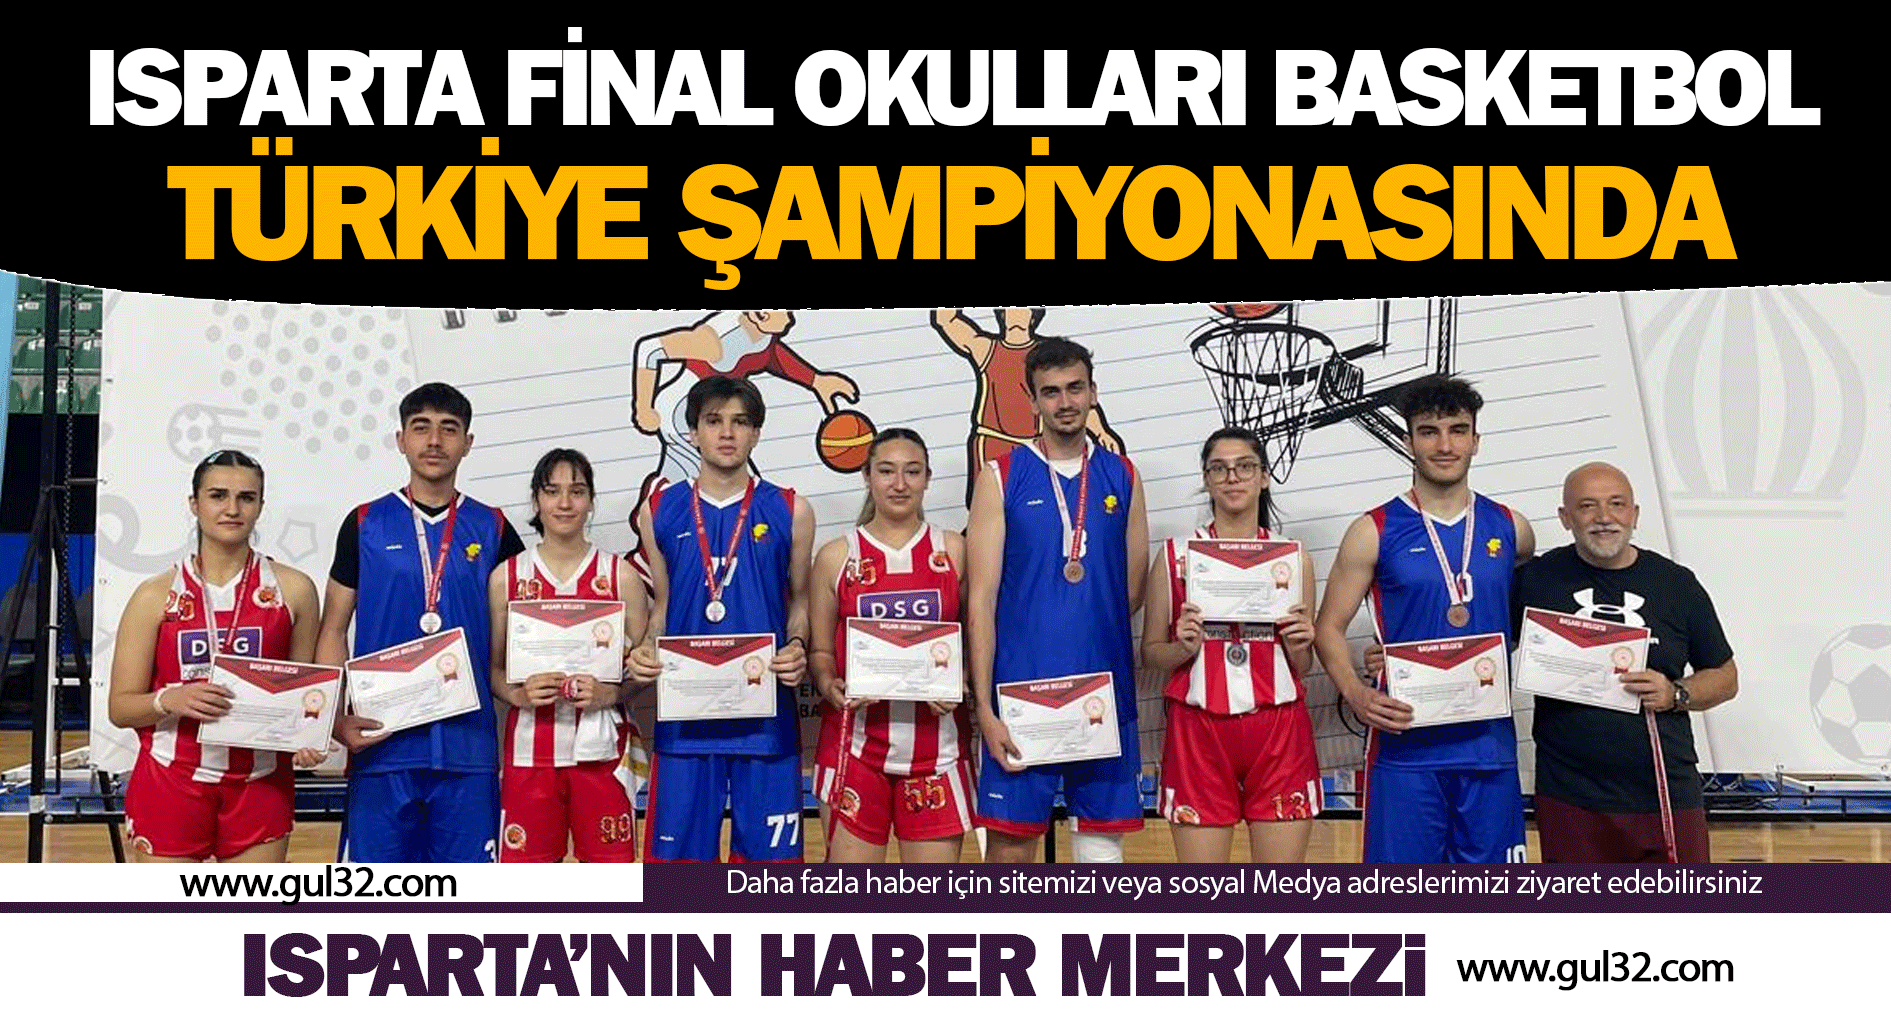  Isparta Final Okulları Basketbol TÜRKİYE ŞAMPİYONASINDA